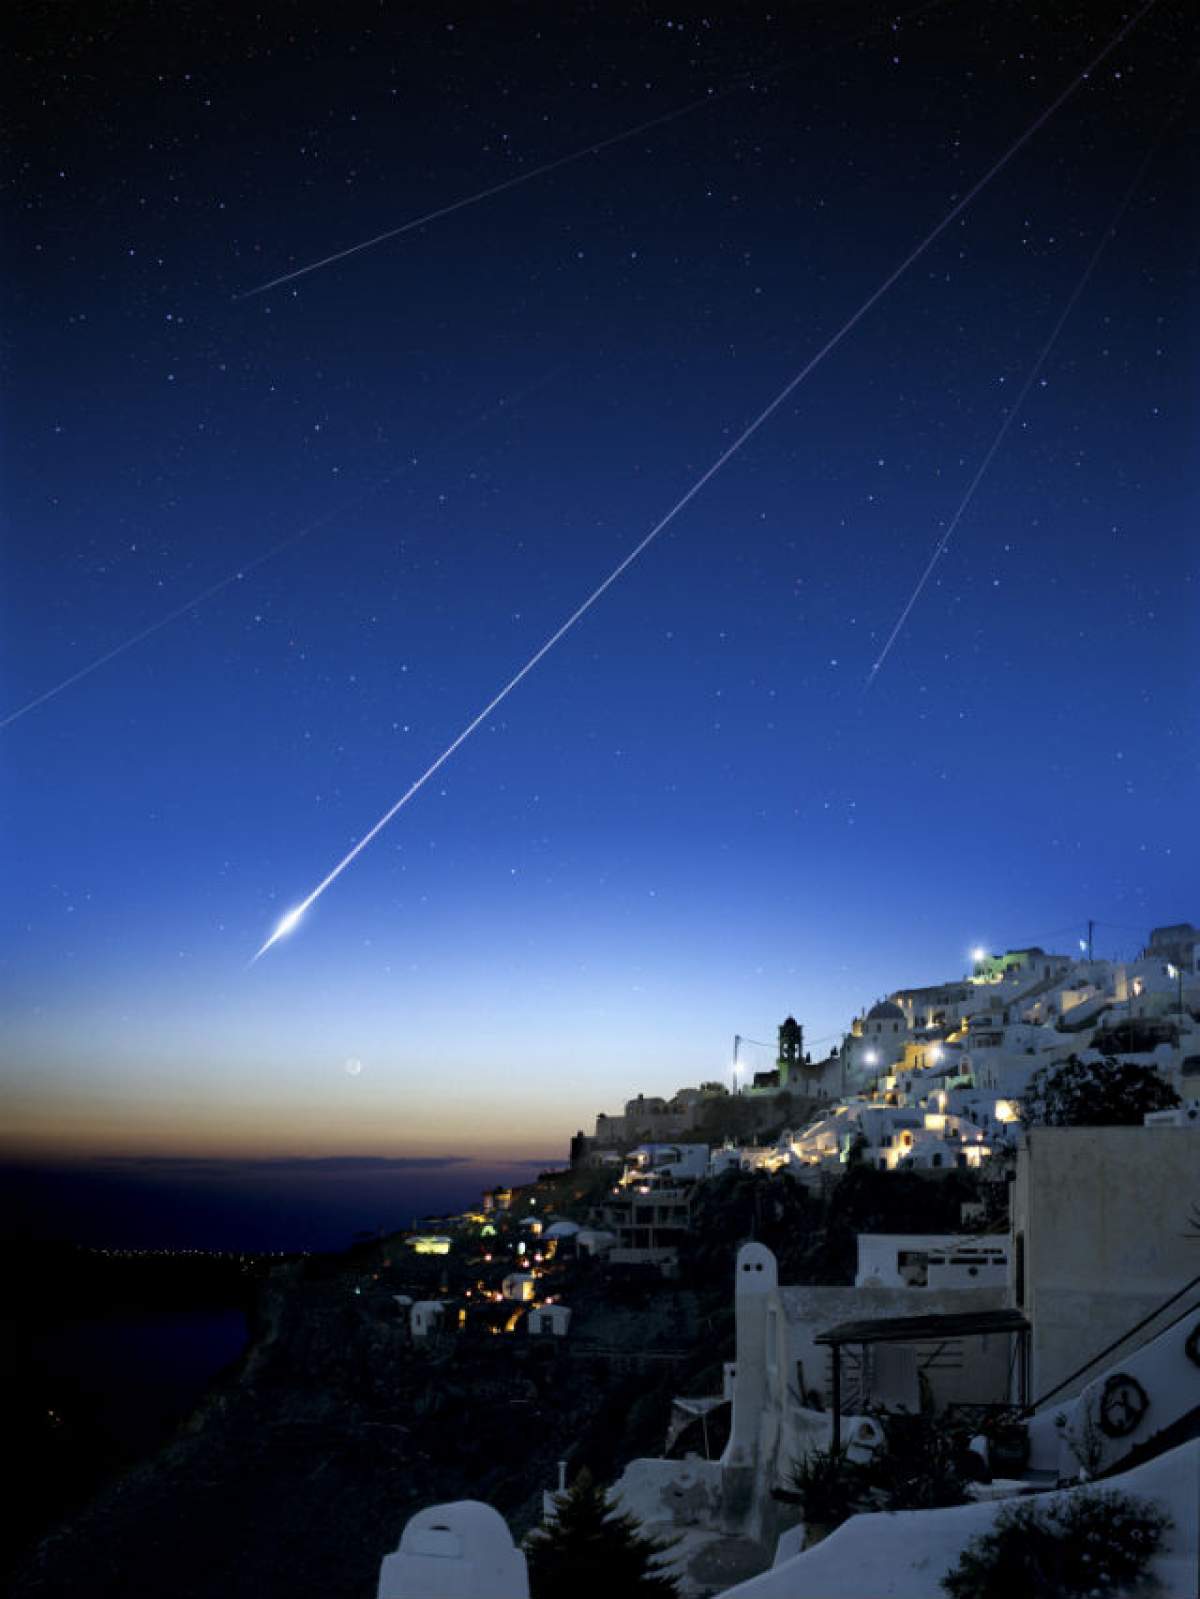 Spectacolul stelelor căzătoare! Cerul nopţii va fi luminat de 100 de meteori pe oră